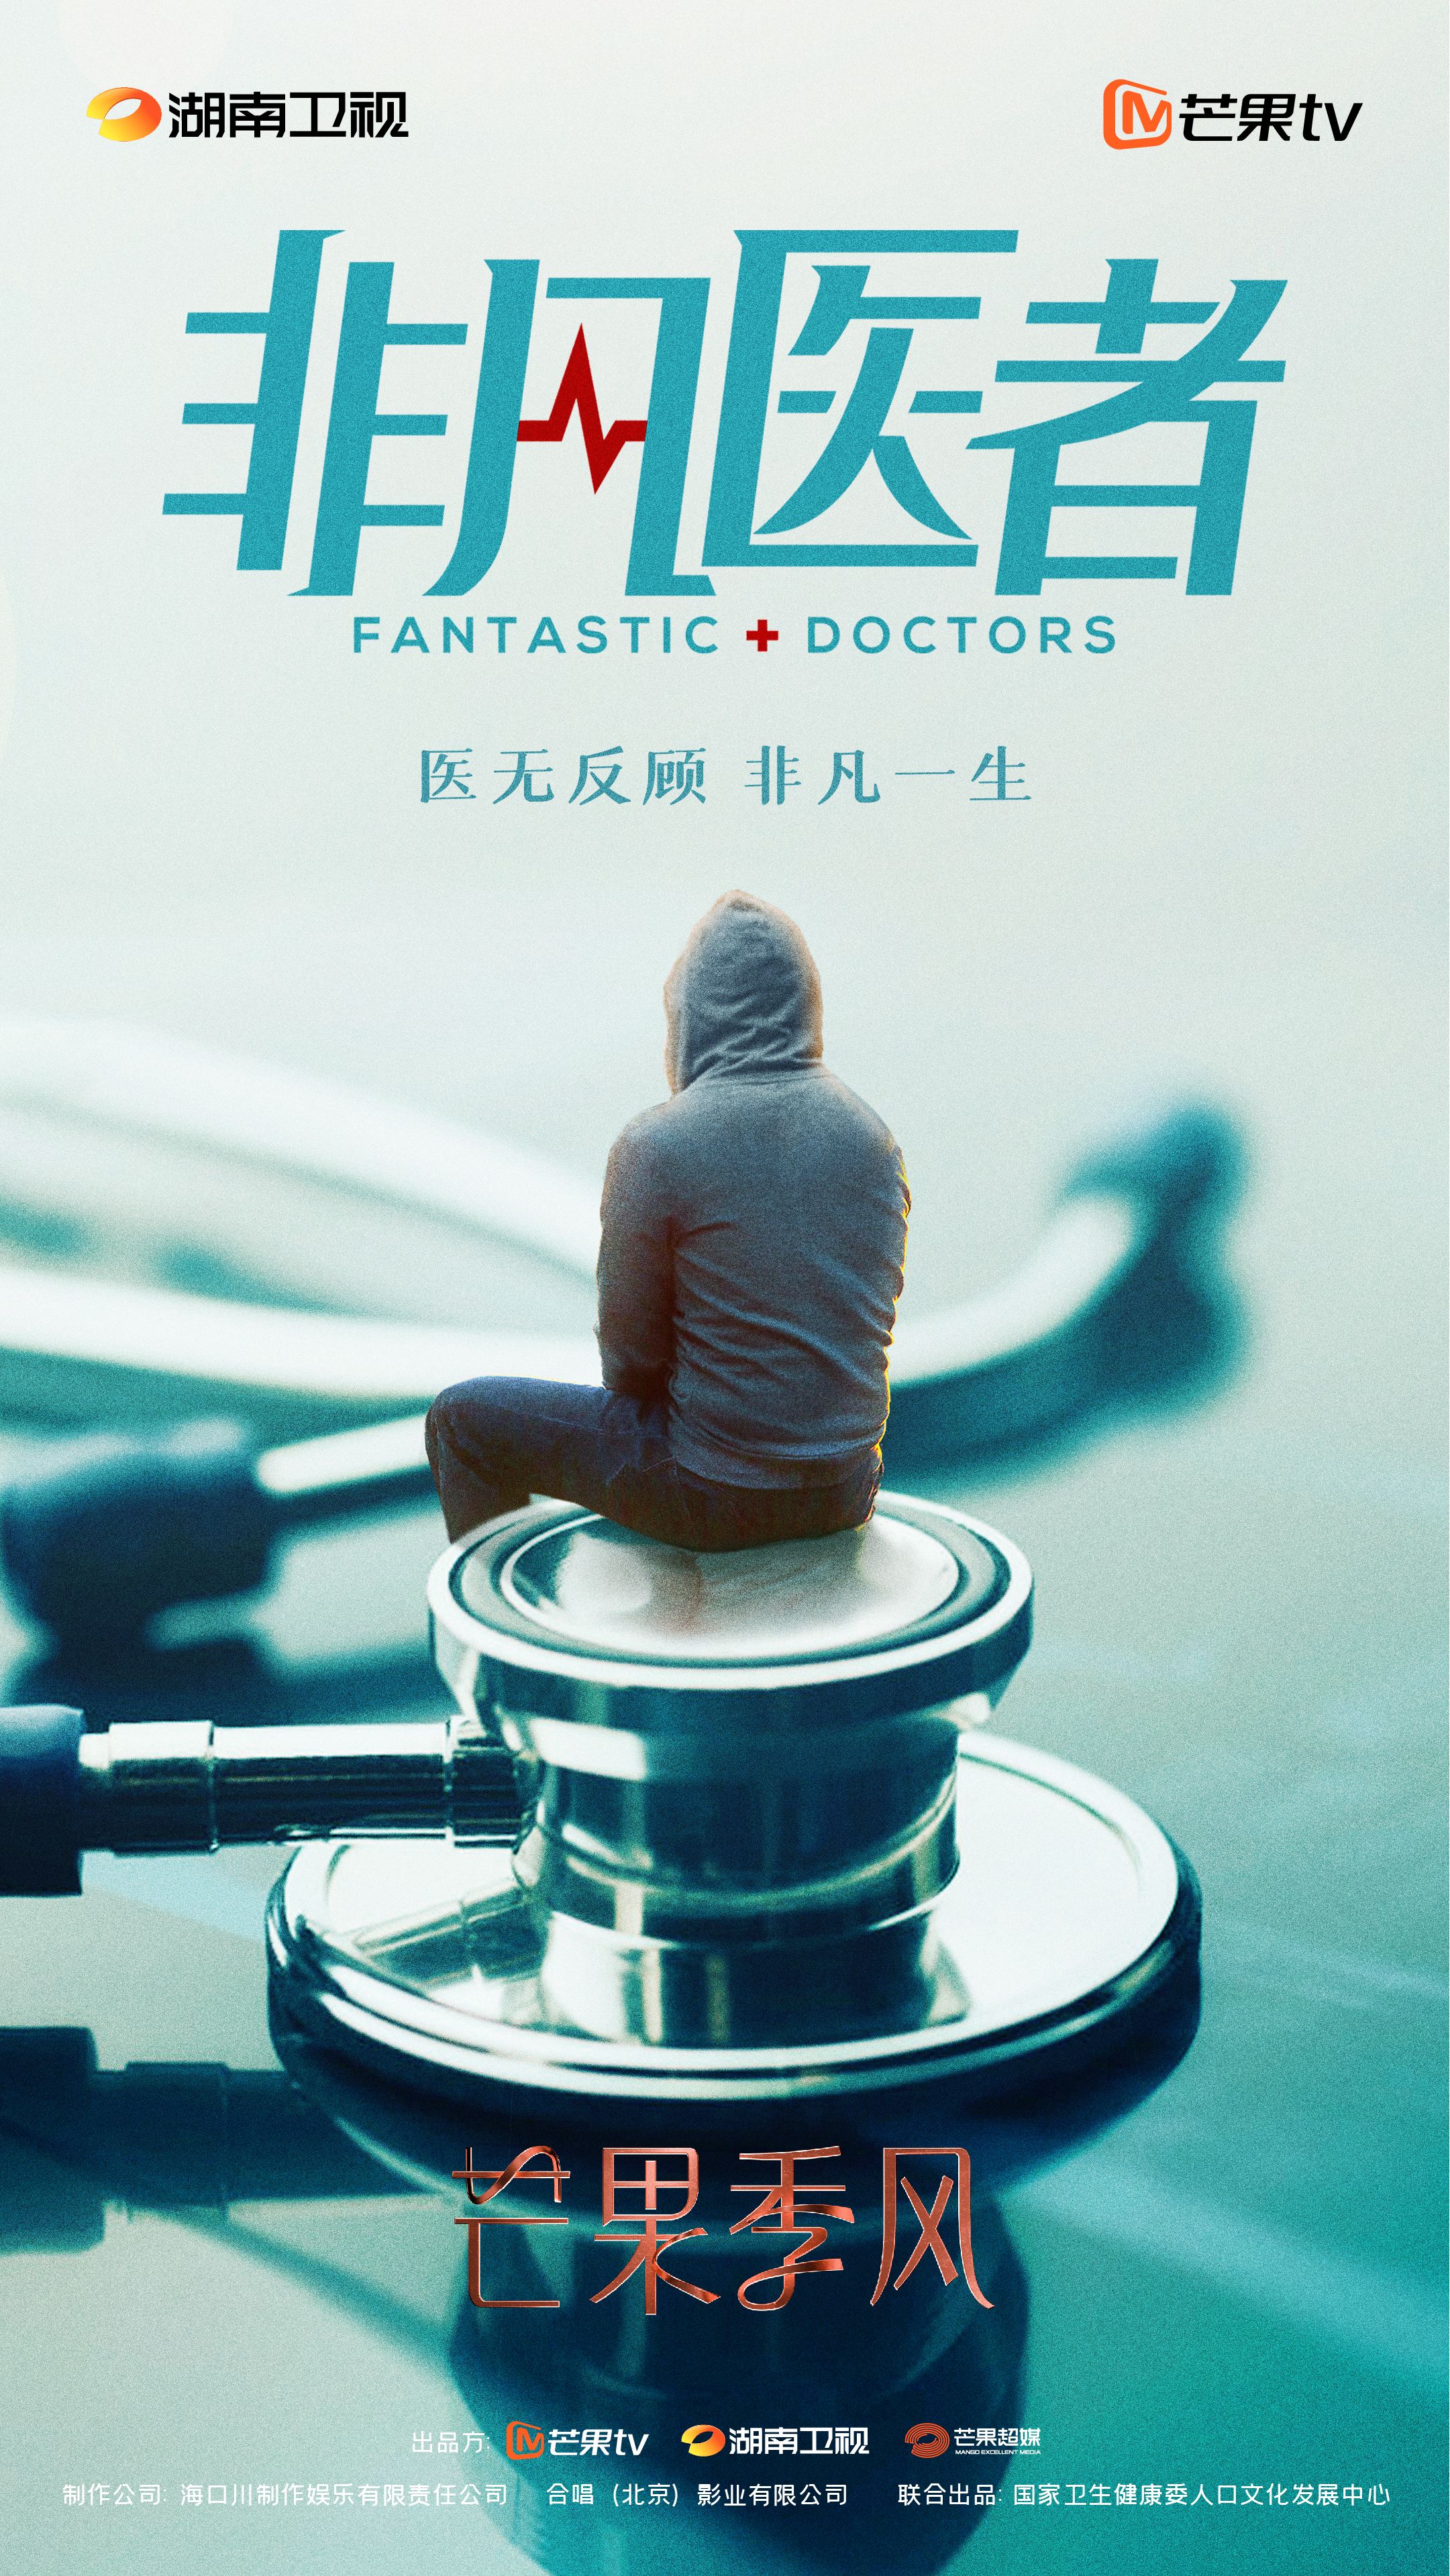 《非凡医者》正式开机 张晚意领衔演绎“天才医生”的超越与成长